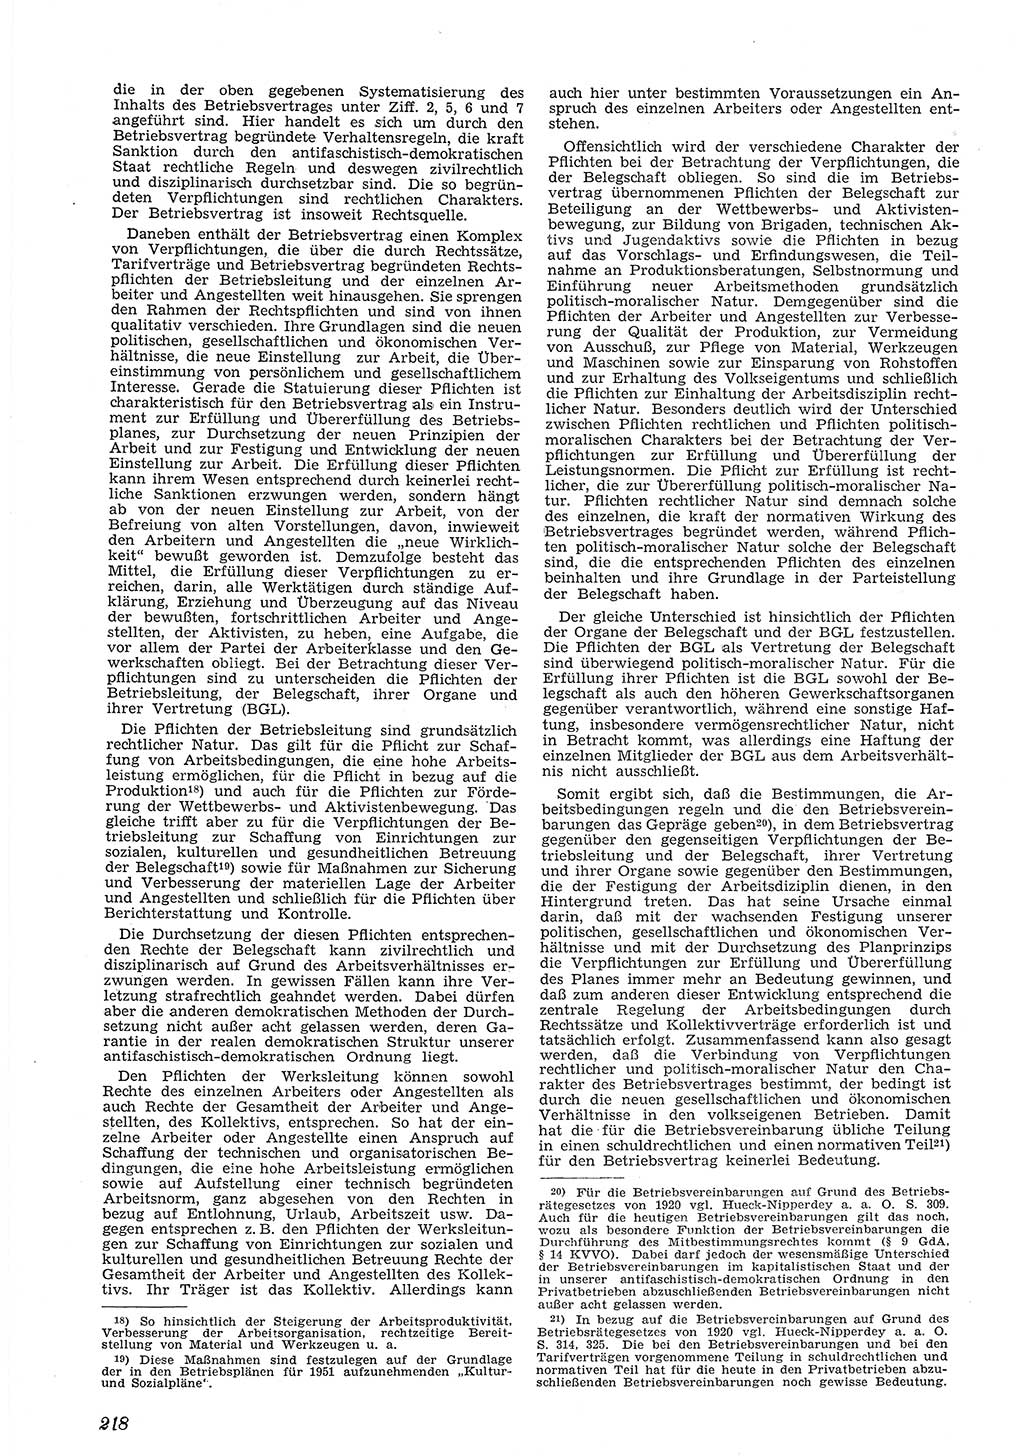 Neue Justiz (NJ), Zeitschrift für Recht und Rechtswissenschaft [Deutsche Demokratische Republik (DDR)], 5. Jahrgang 1951, Seite 218 (NJ DDR 1951, S. 218)